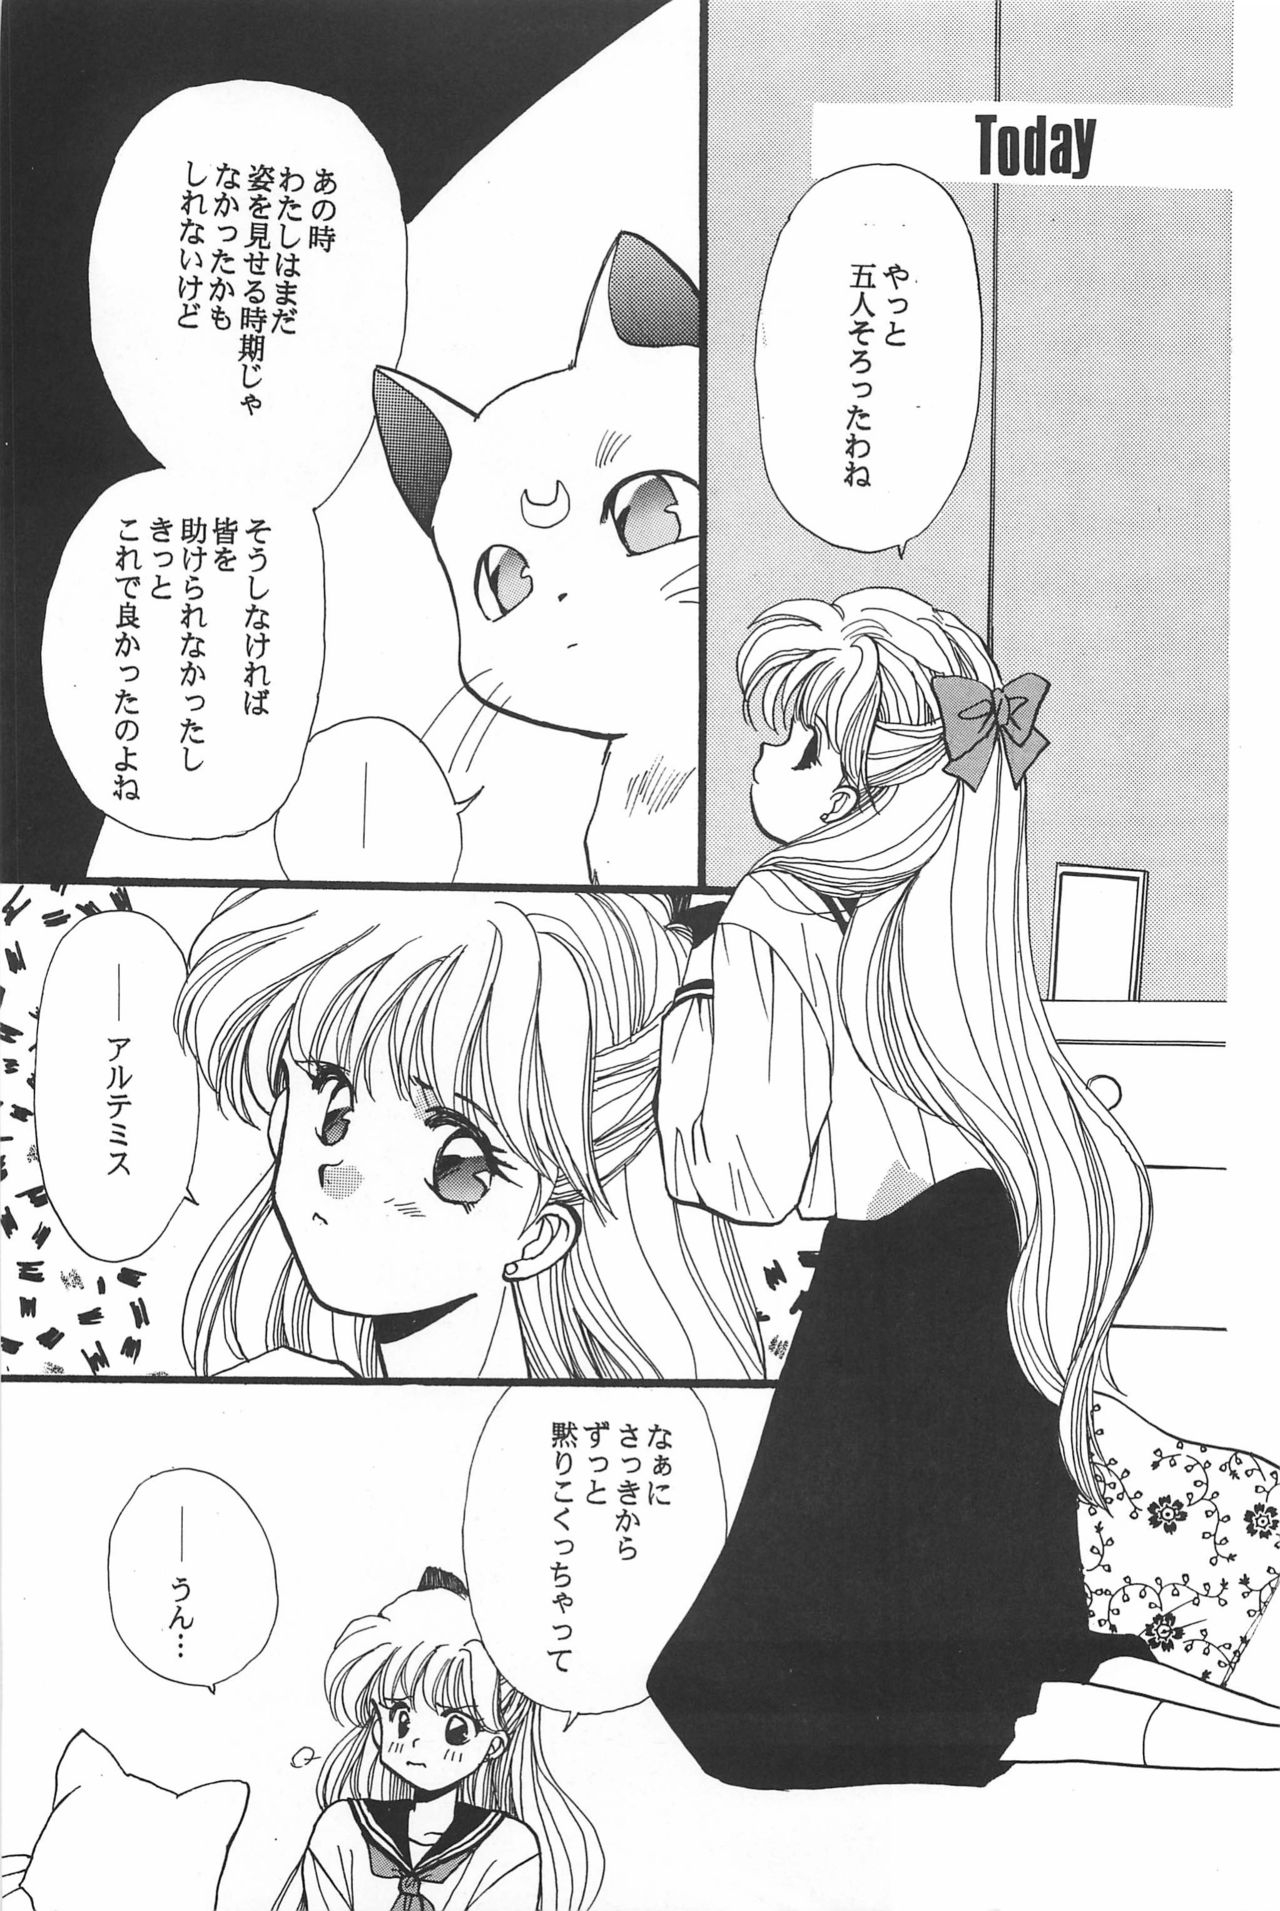 [Hello World (Muttri Moony)] Kaze no You ni Yume no You ni - Sailor Moon Collection (Sailor Moon) 112